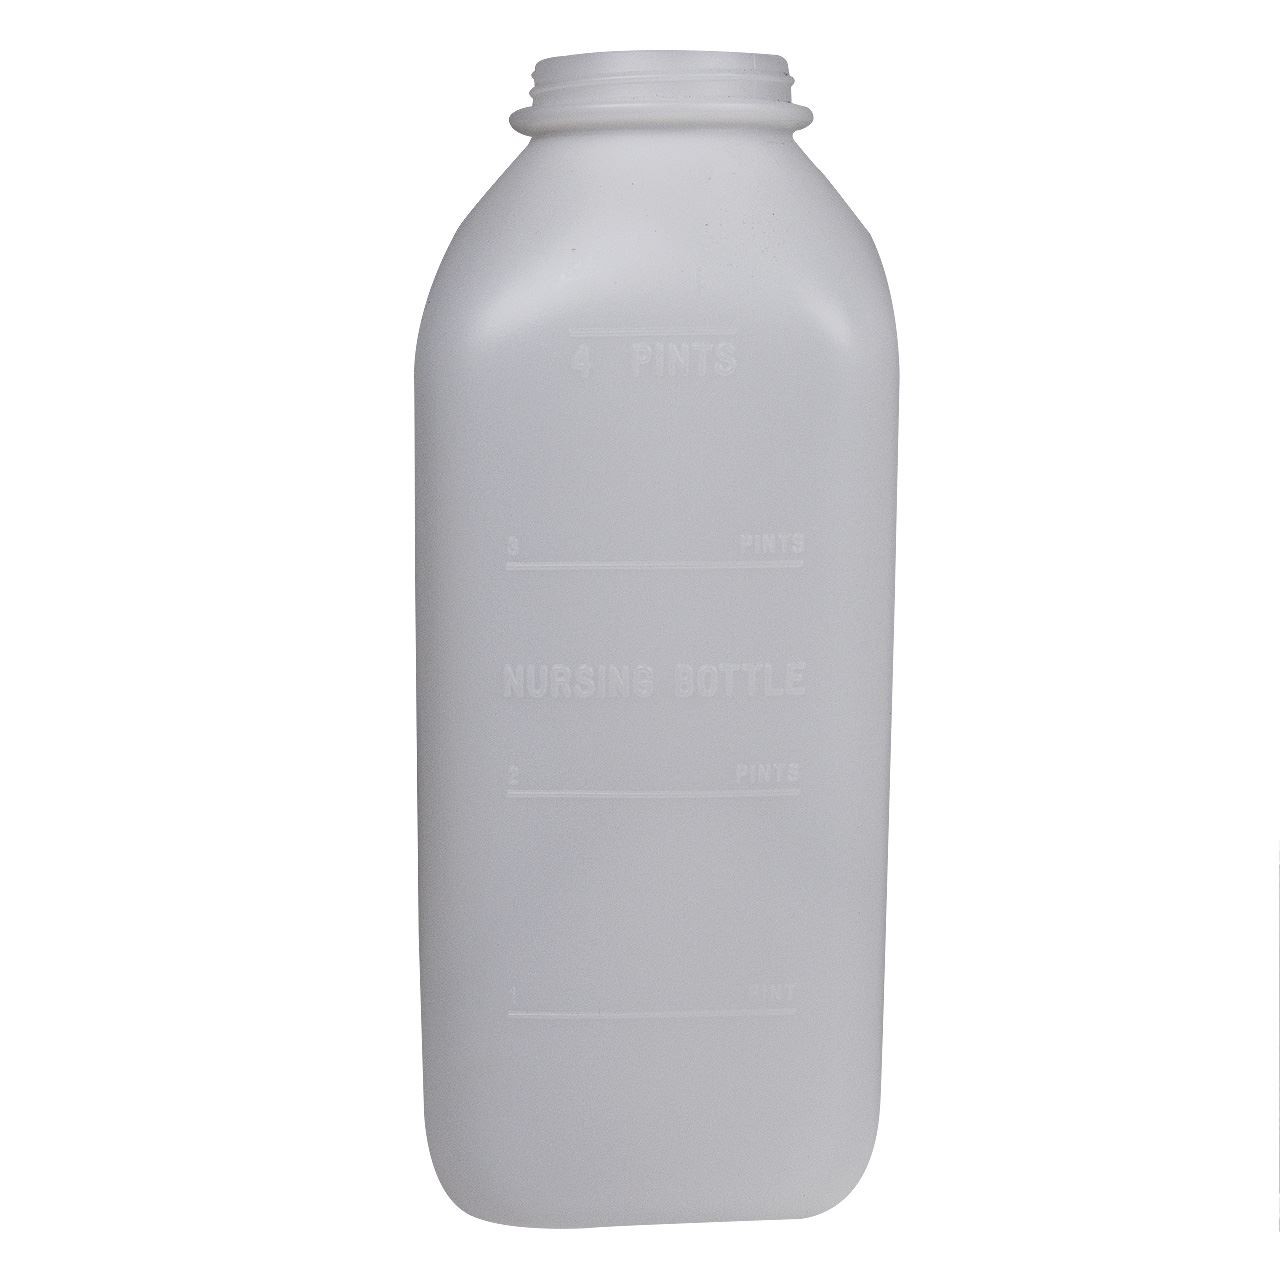 Miller Standard Bottle Only (CS 12)